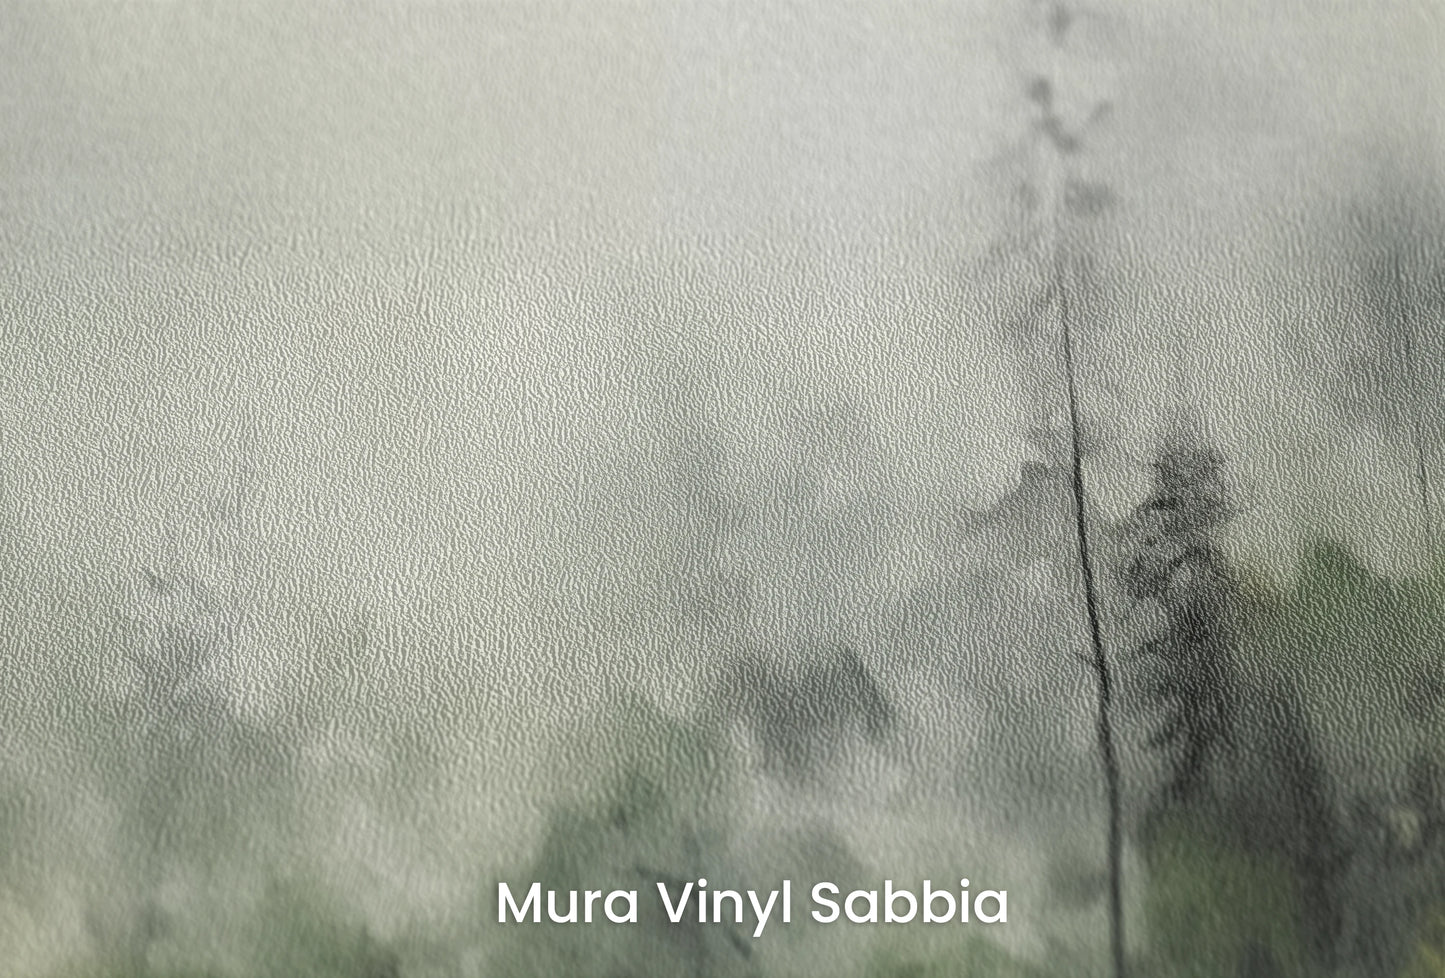 Zbliżenie na artystyczną fototapetę o nazwie Leśna Melancholia na podłożu Mura Vinyl Sabbia struktura grubego ziarna piasku.